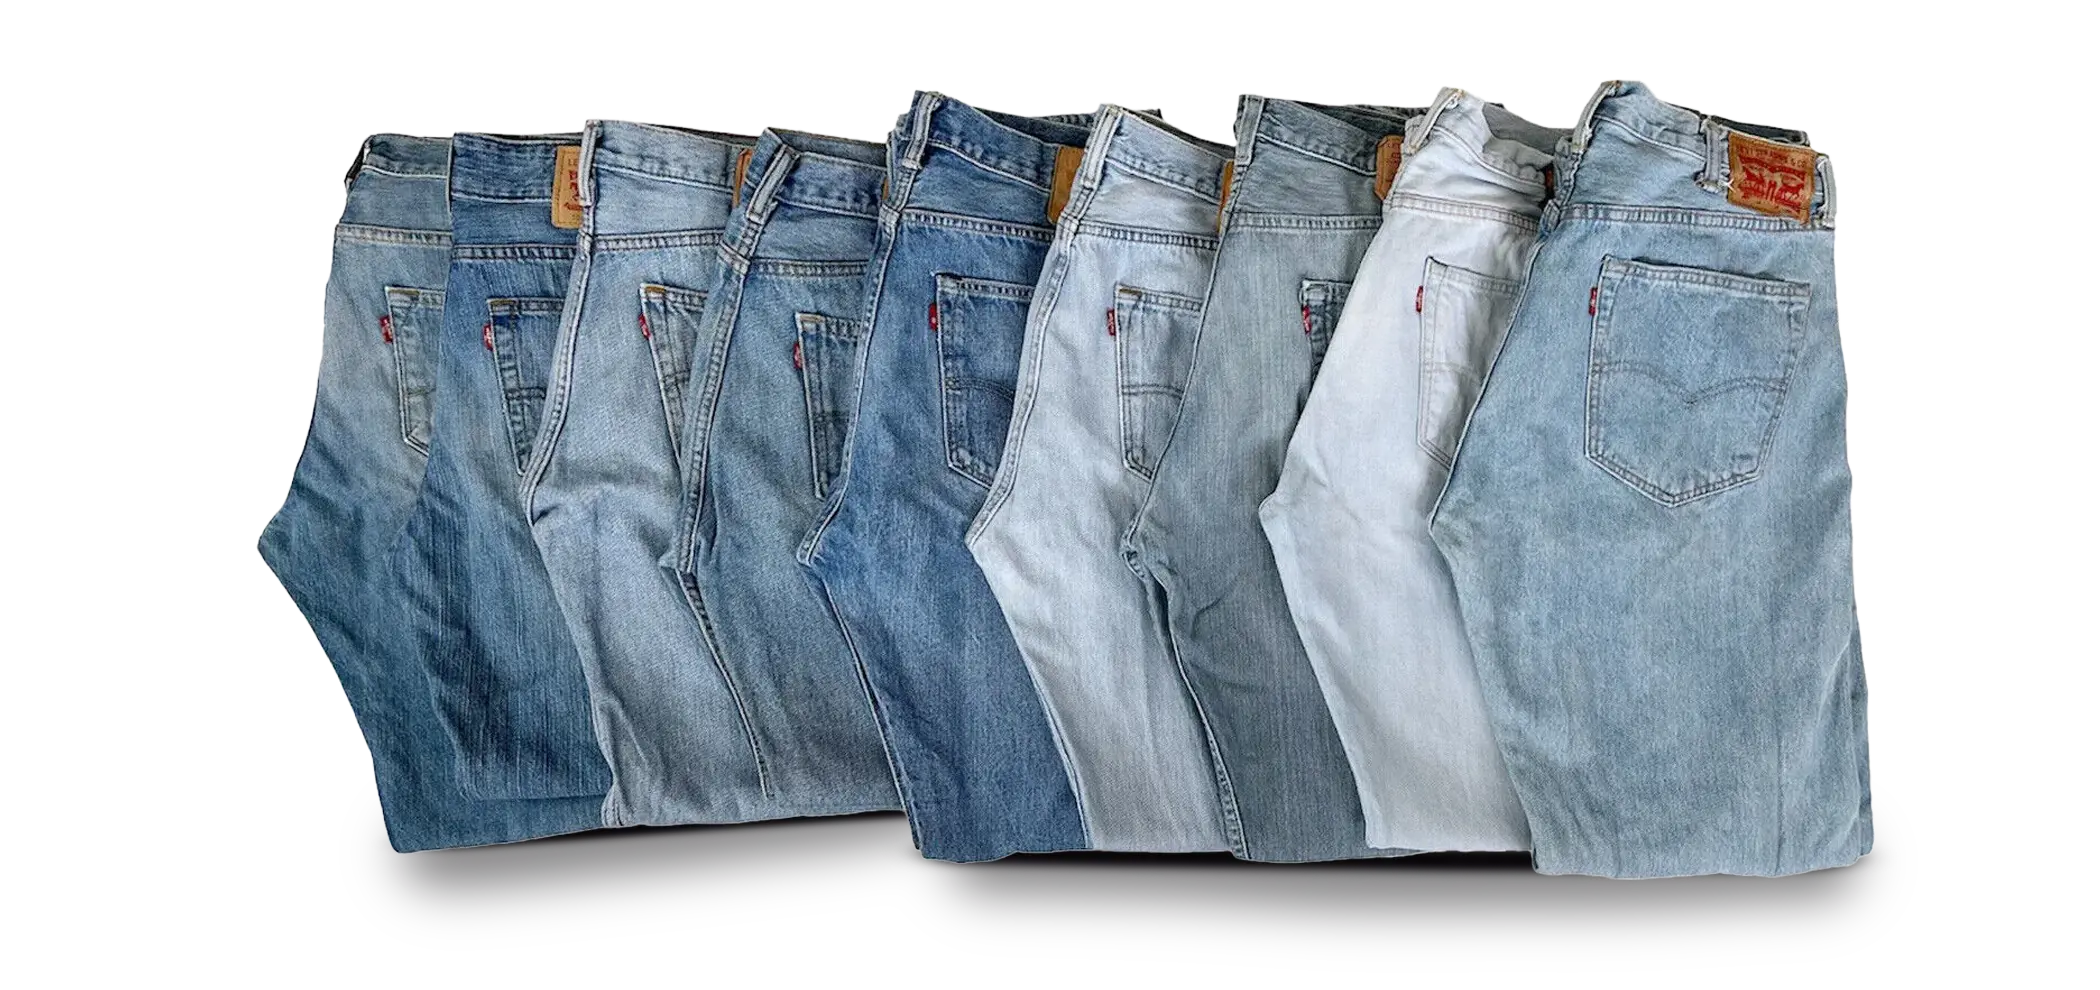  Blanco - Jeans Para Hombre / Ropa Para Hombre: Ropa, Zapatos Y  Joyería